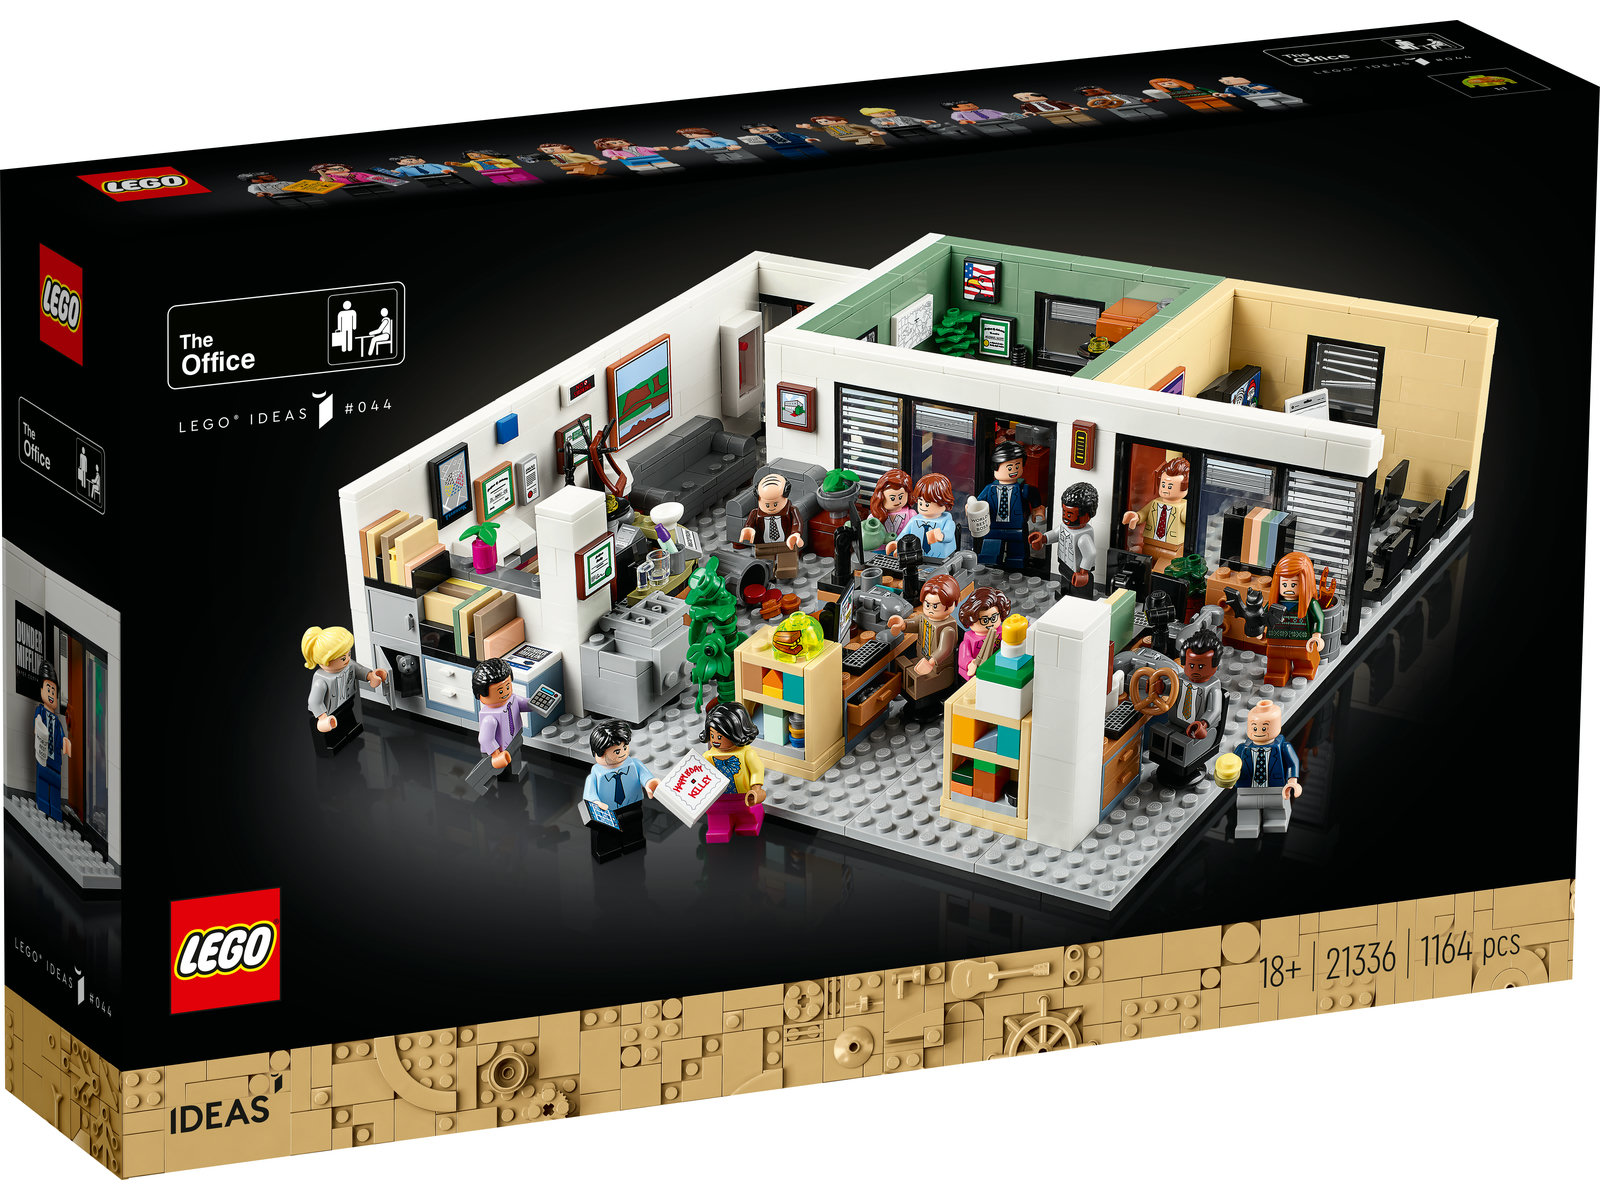 LEGO® Ideas 21336 - The Office